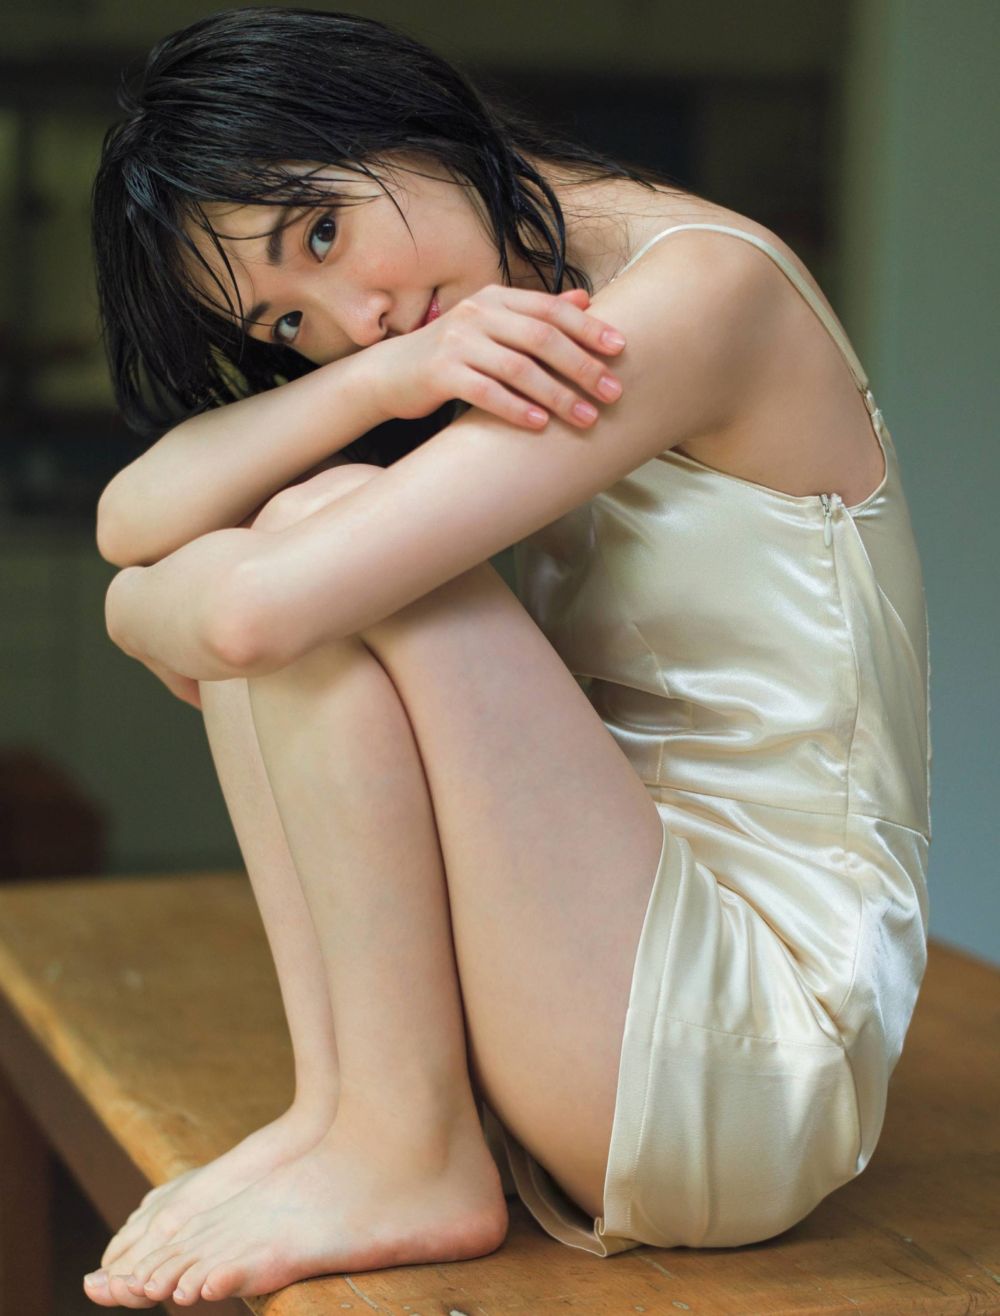 Rina Ikoma Sexy and Hottest Photos , Latest Pics